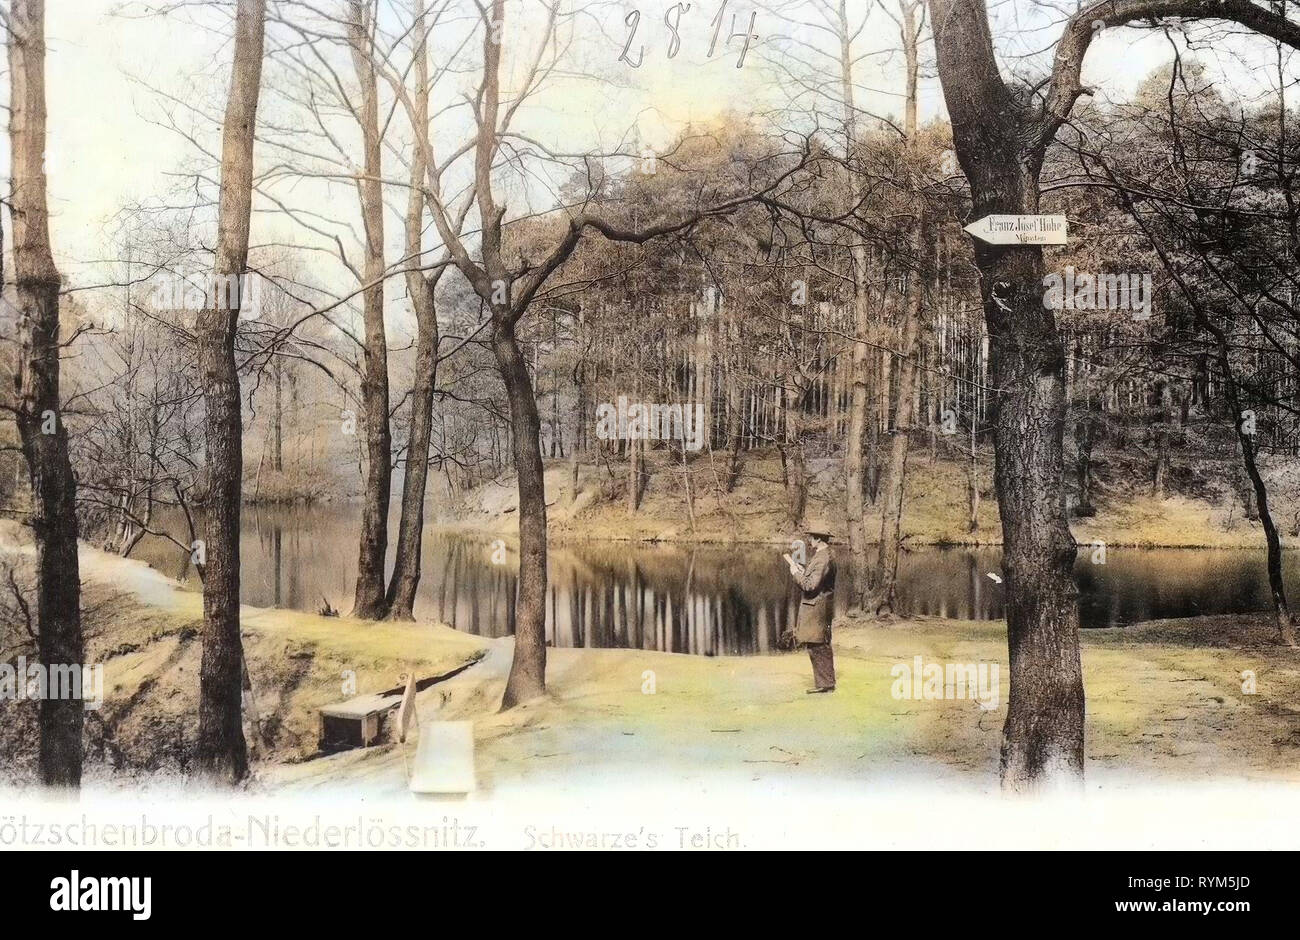 Schwarzes Teich, 1903, Landkreis Meißen, Kötzschenbroda, Niederlößnitz, Germania Foto Stock